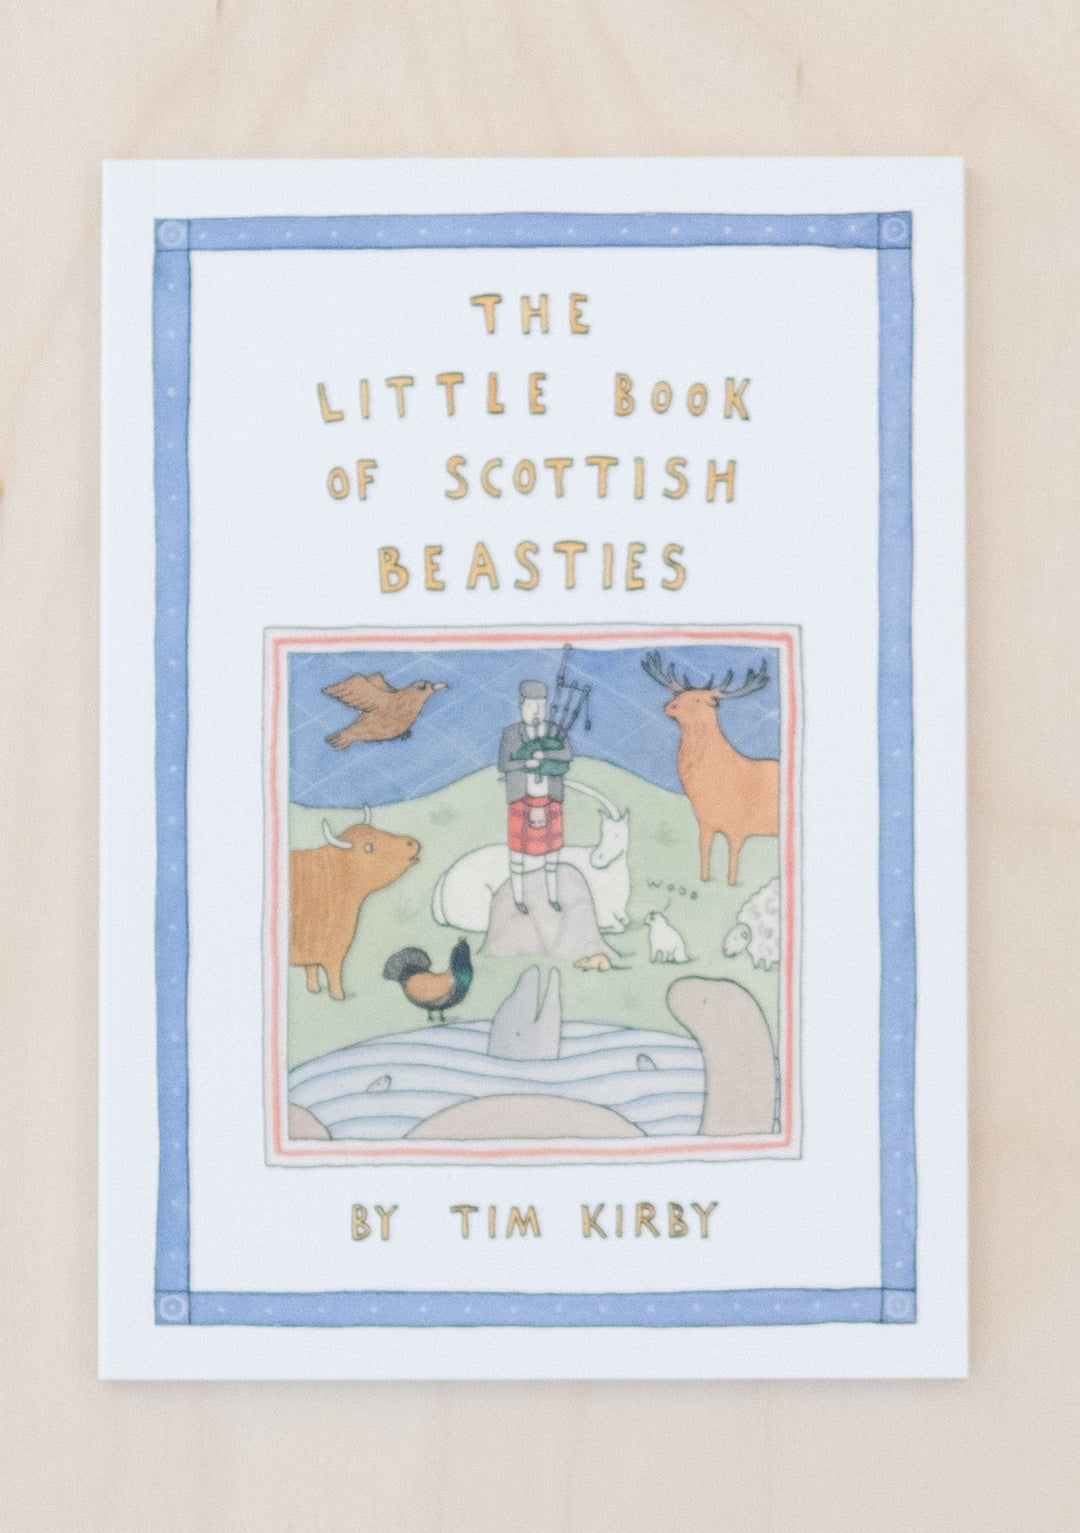 Le petit livre des bêtes écossaises